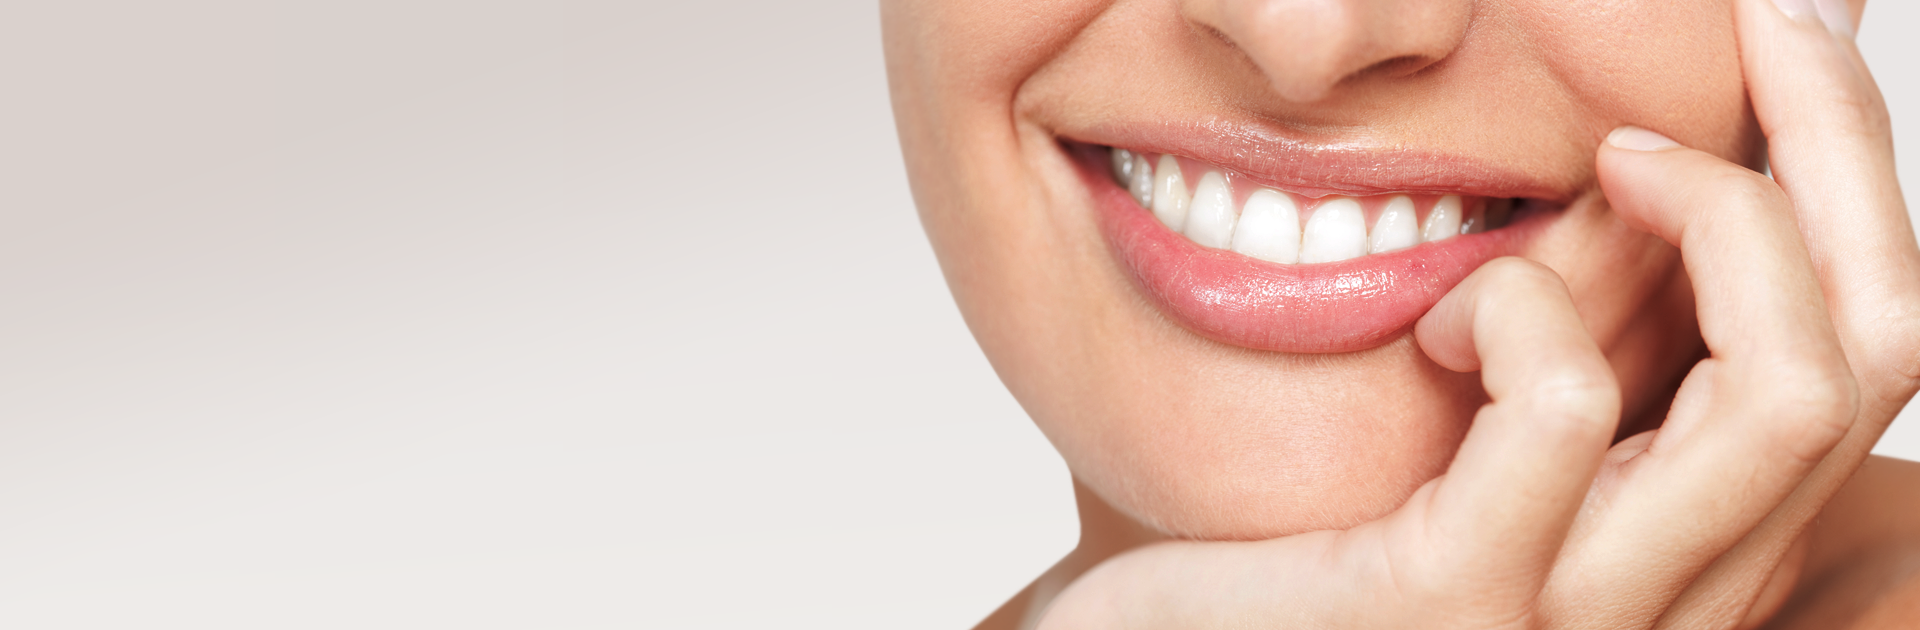 Čištění zubních kanálků - Endodoncie